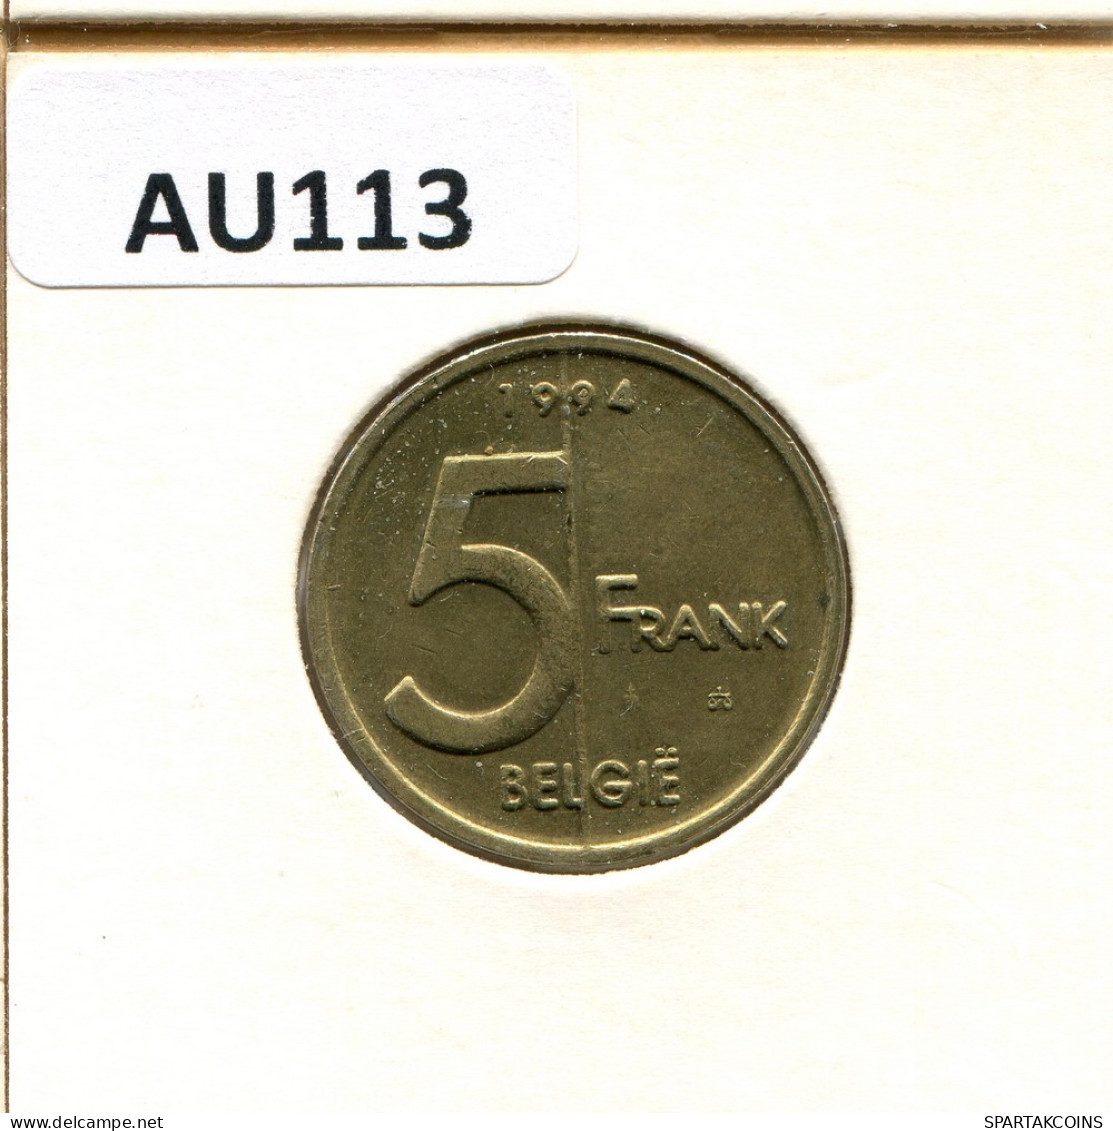 5 FRANCS 1994 DUTCH Text BELGIUM Coin #AU113.U - 5 Francs